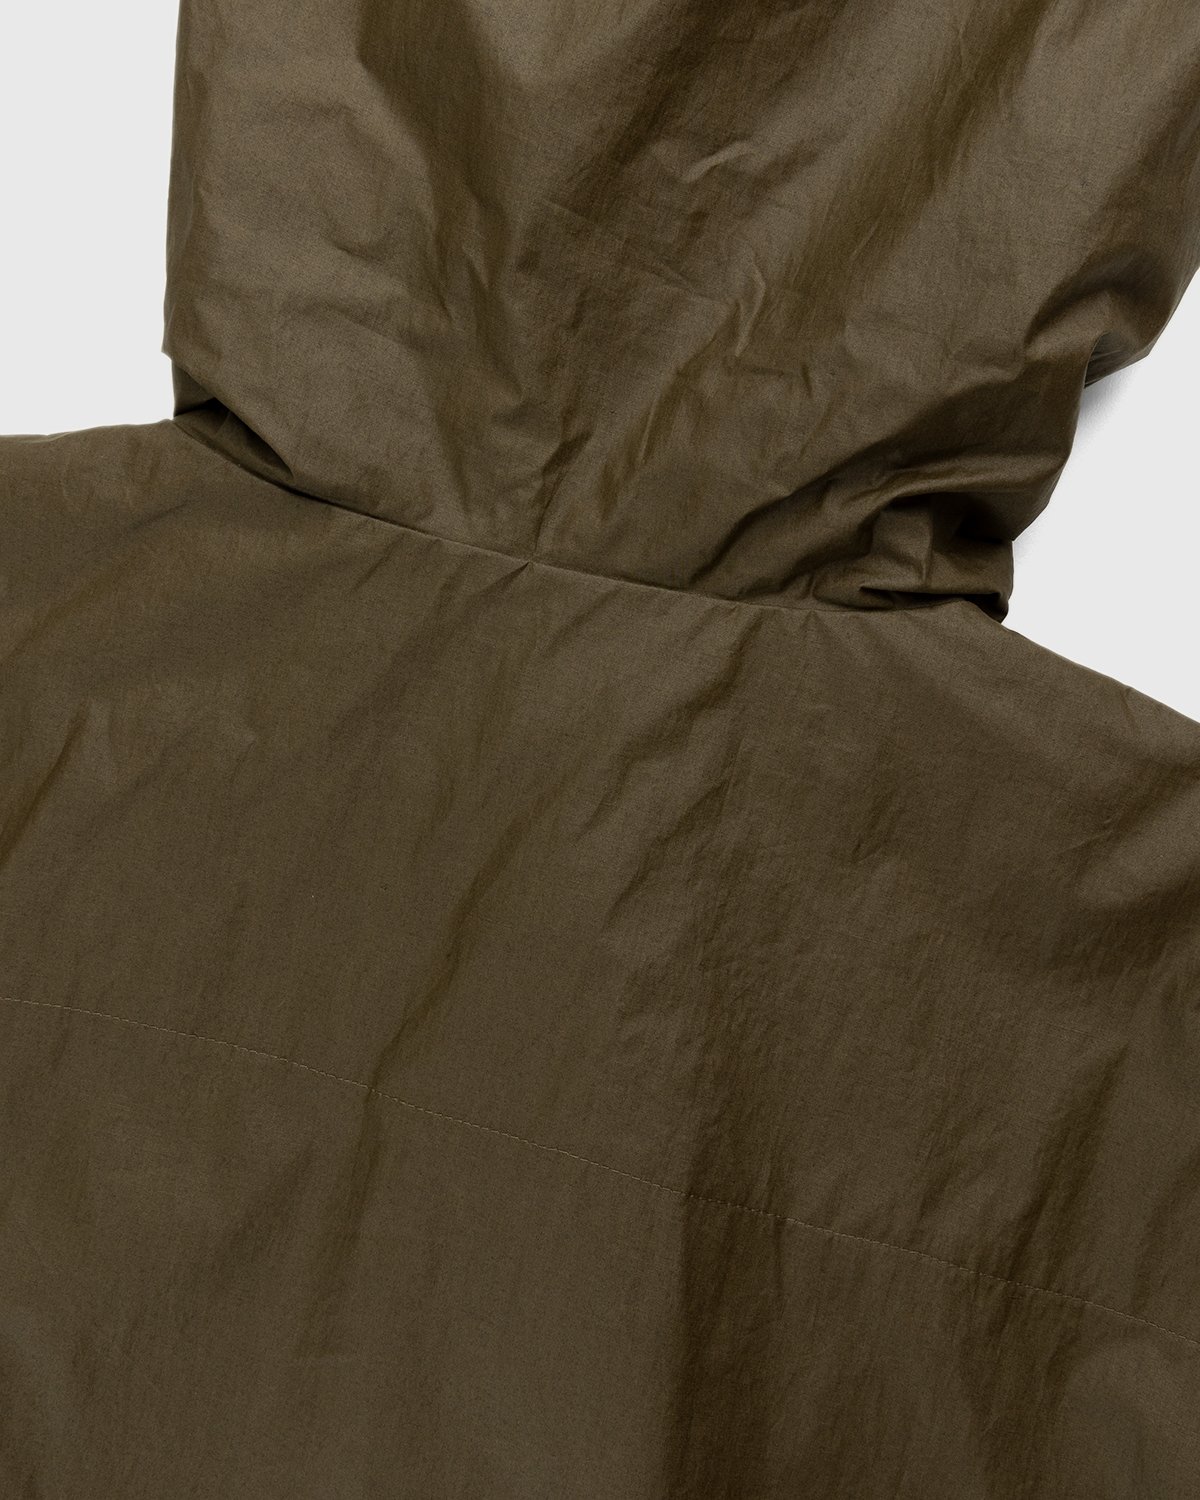 Arnar Mar Jonsson - Skel Hooded Jacket Beige/Chocolate - Clothing - Brown - Image 8